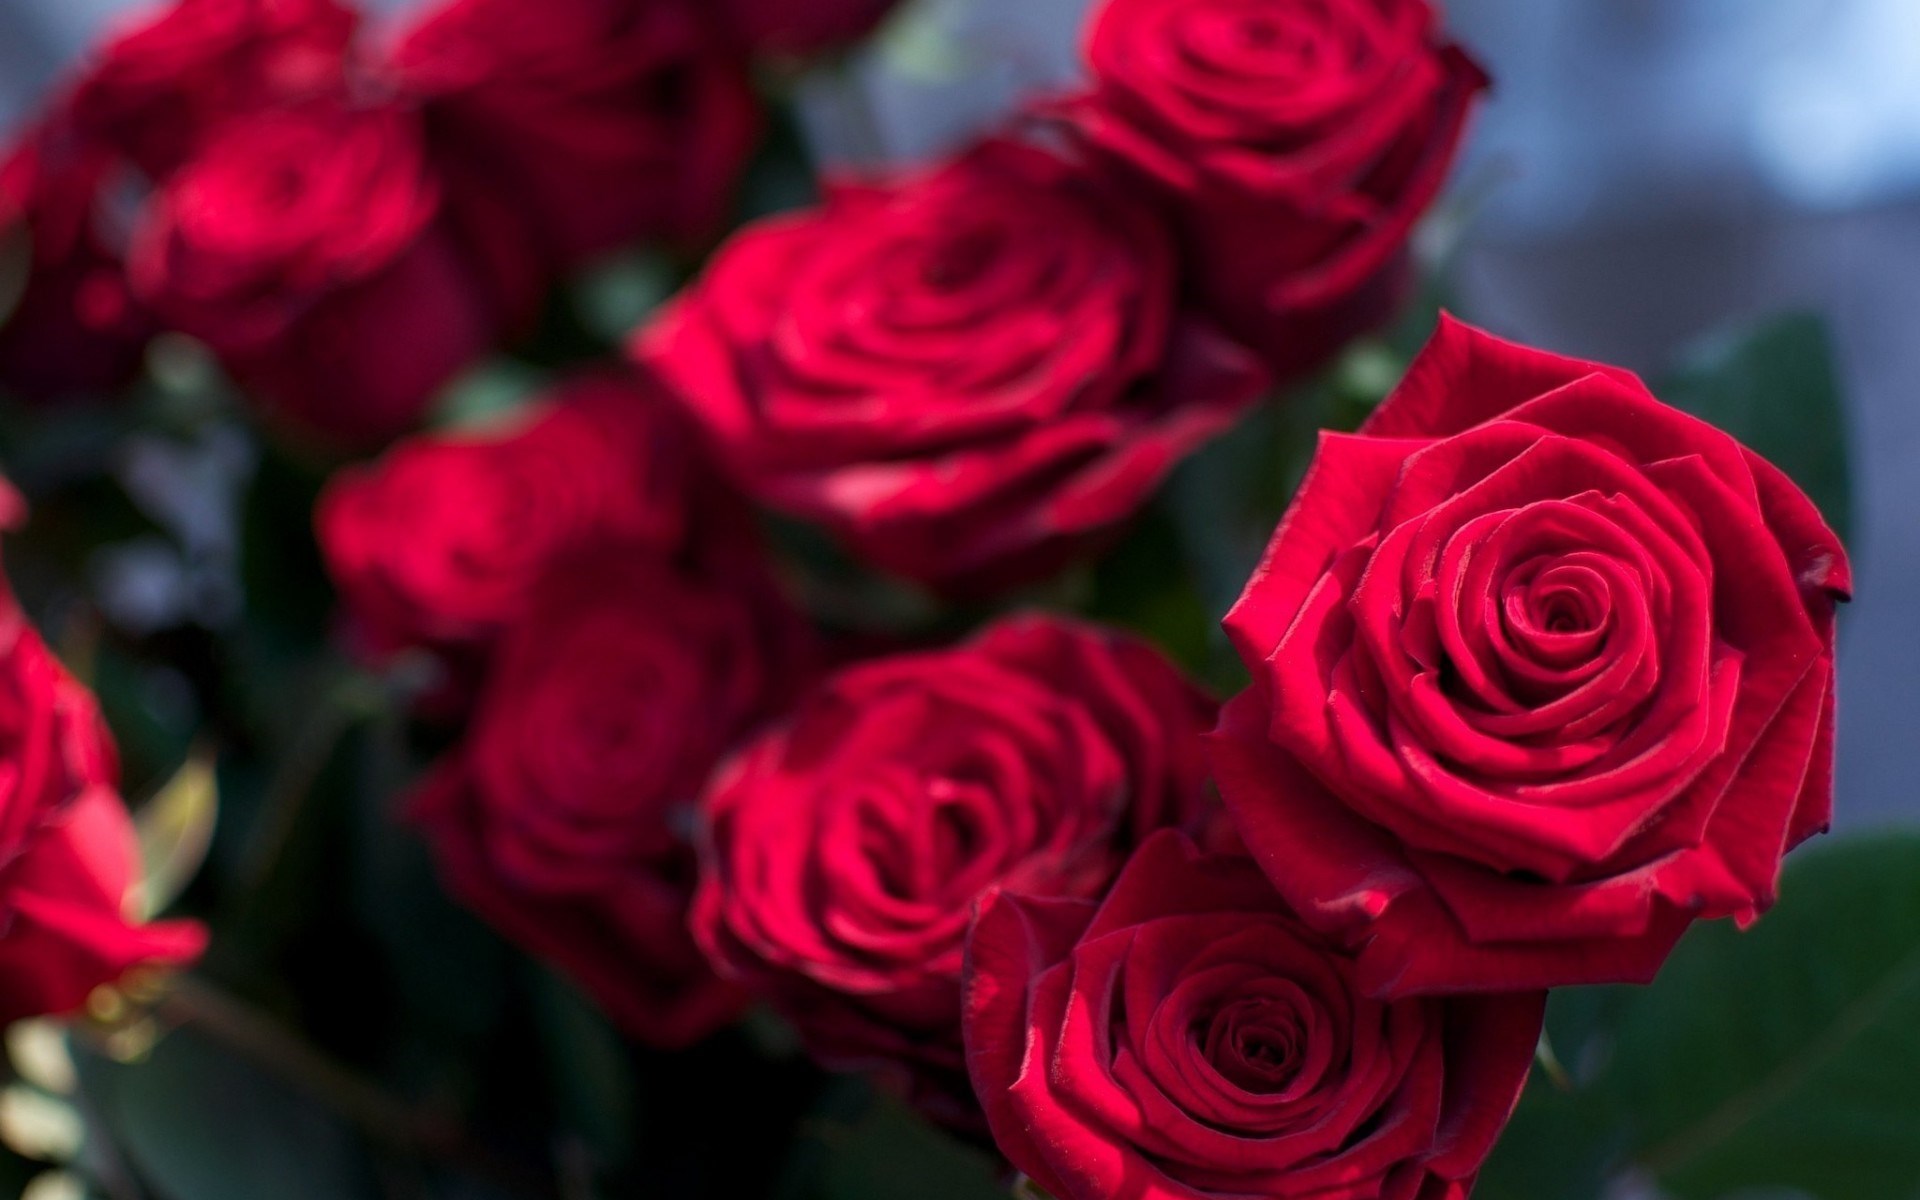 rose flower wallpaper hd descarga gratuita,flor,rosa,rosas de jardín,planta floreciendo,rojo